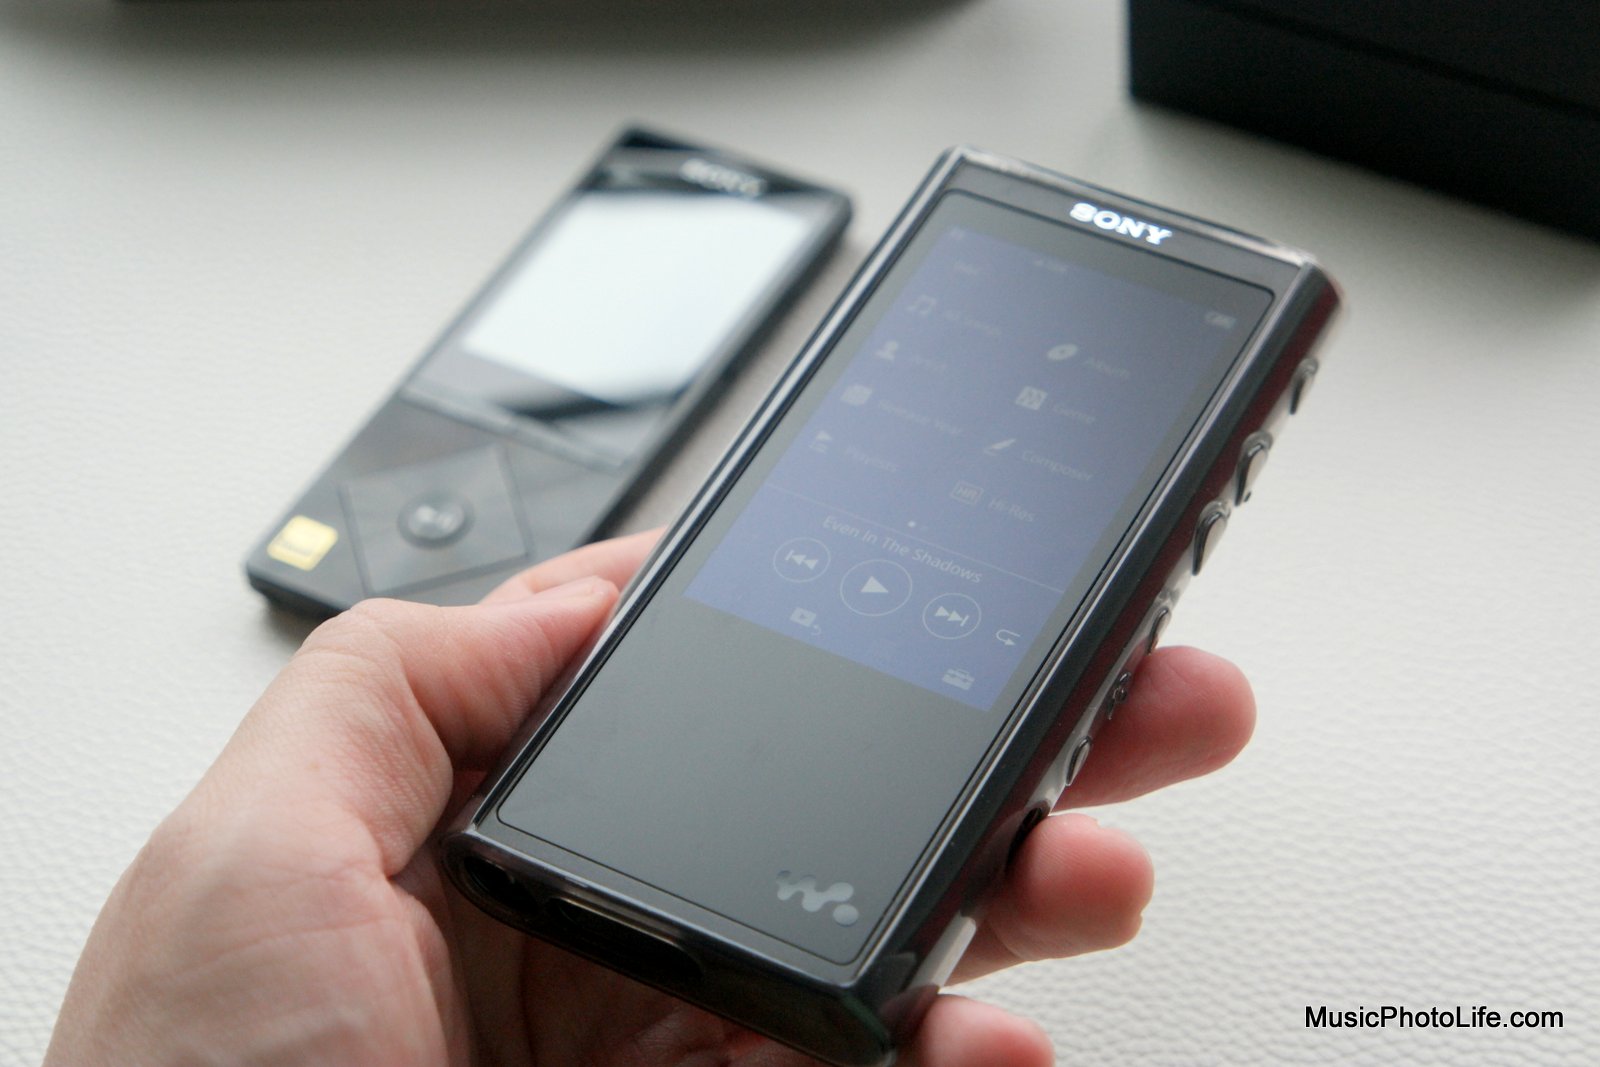 Sony NW-ZX300 Walkman Review: Elevates Audio Quality